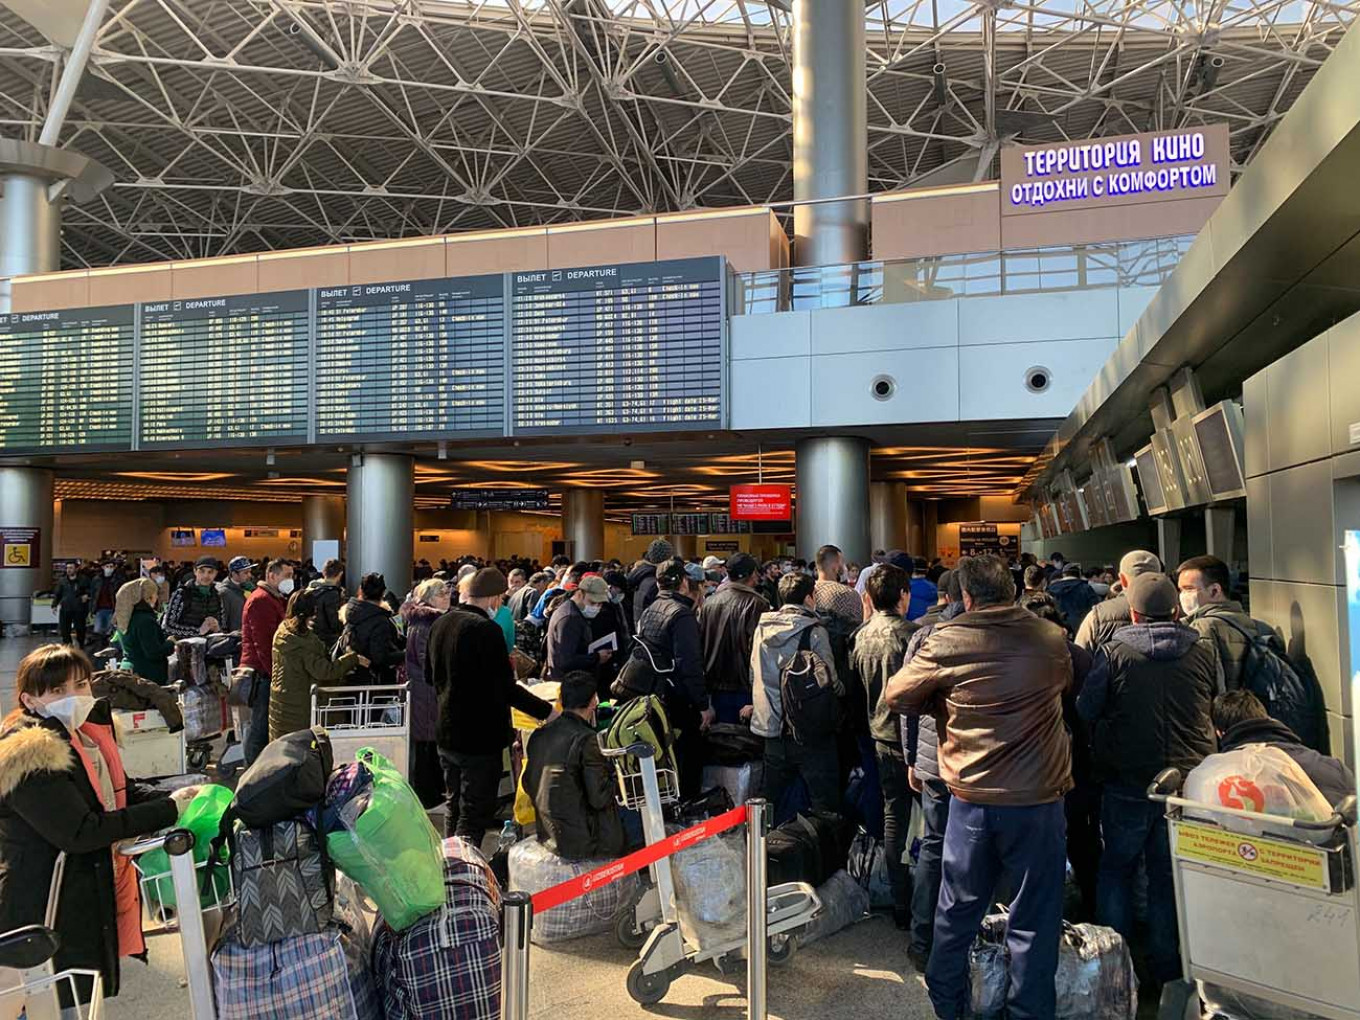 Penutupan perbatasan akibat virus corona membuat pekerja migran terdampar di bandara Moskow